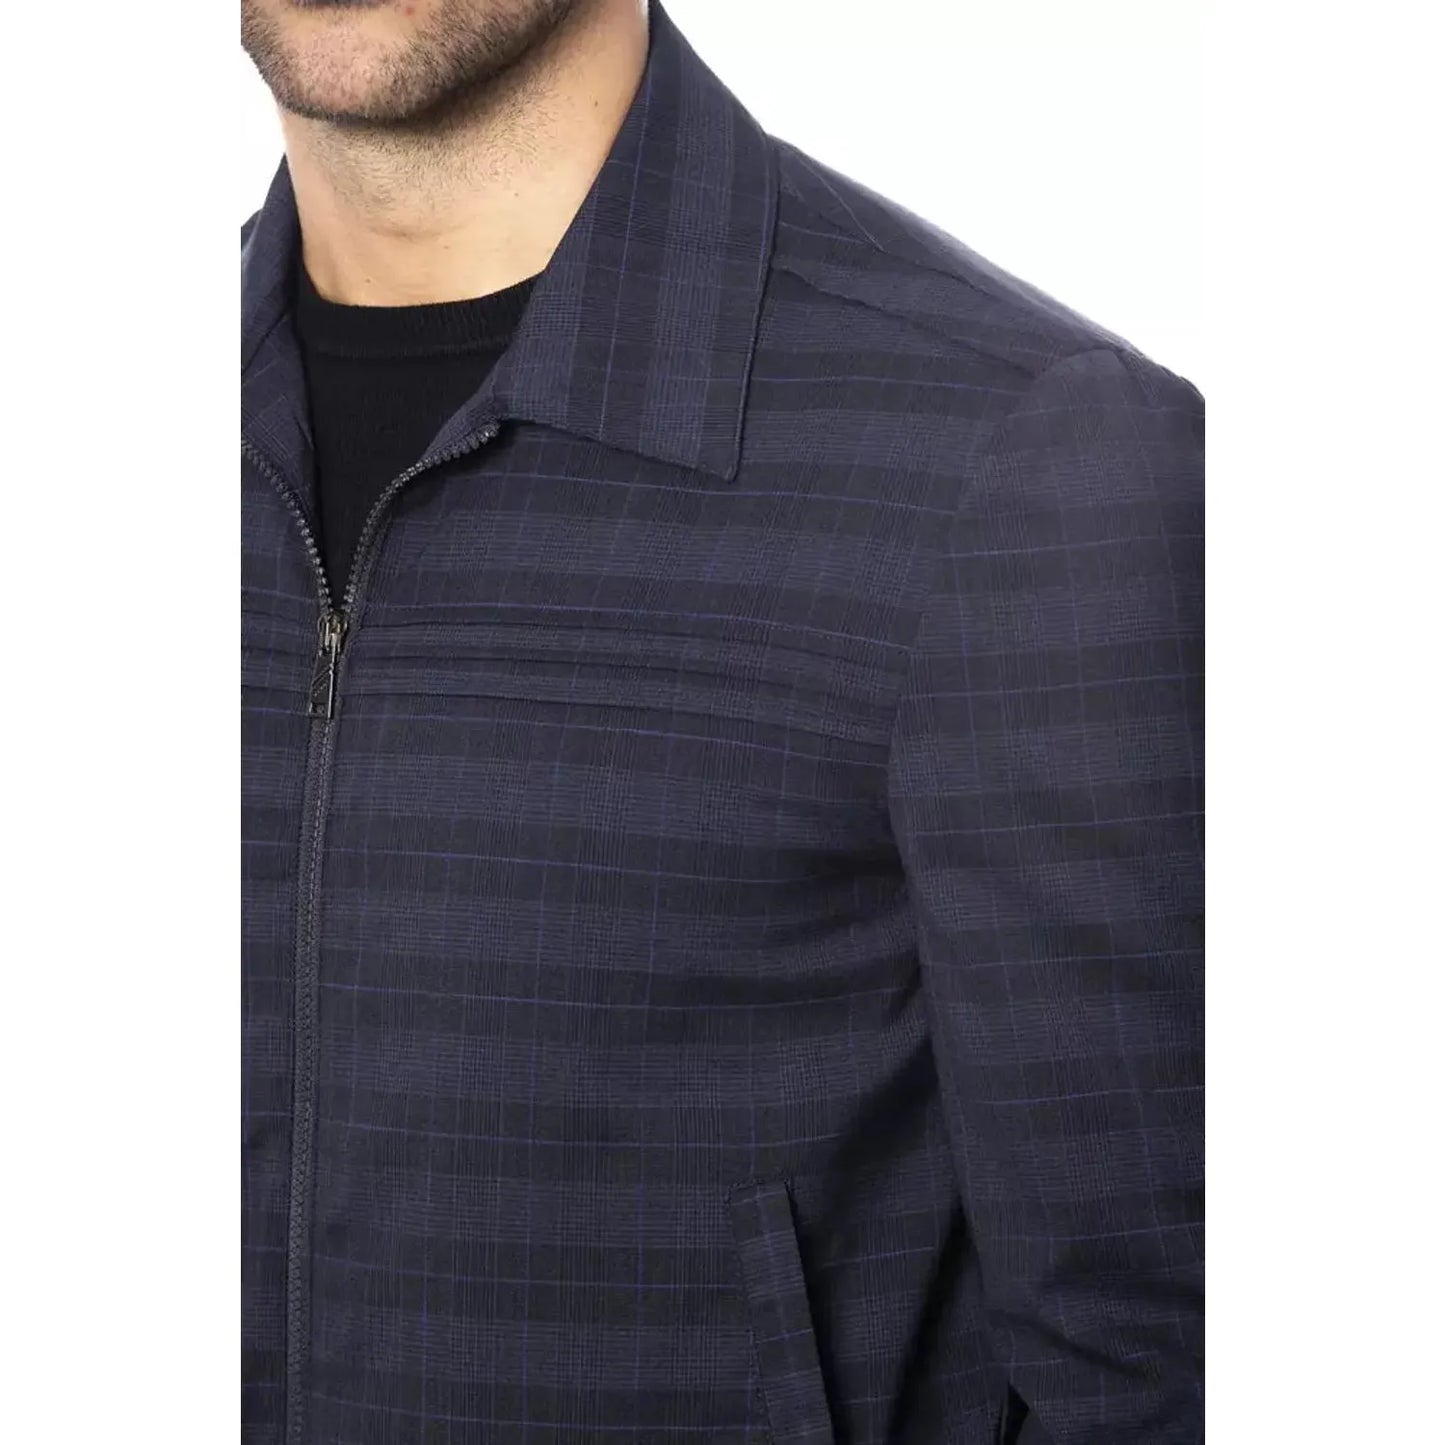 Verri Elegant Blue Wool Bomber Jacket Coats & Jackets blu-jacket-2 stock_product_image_18320_789353655-15-ee5c5029-c2f.webp